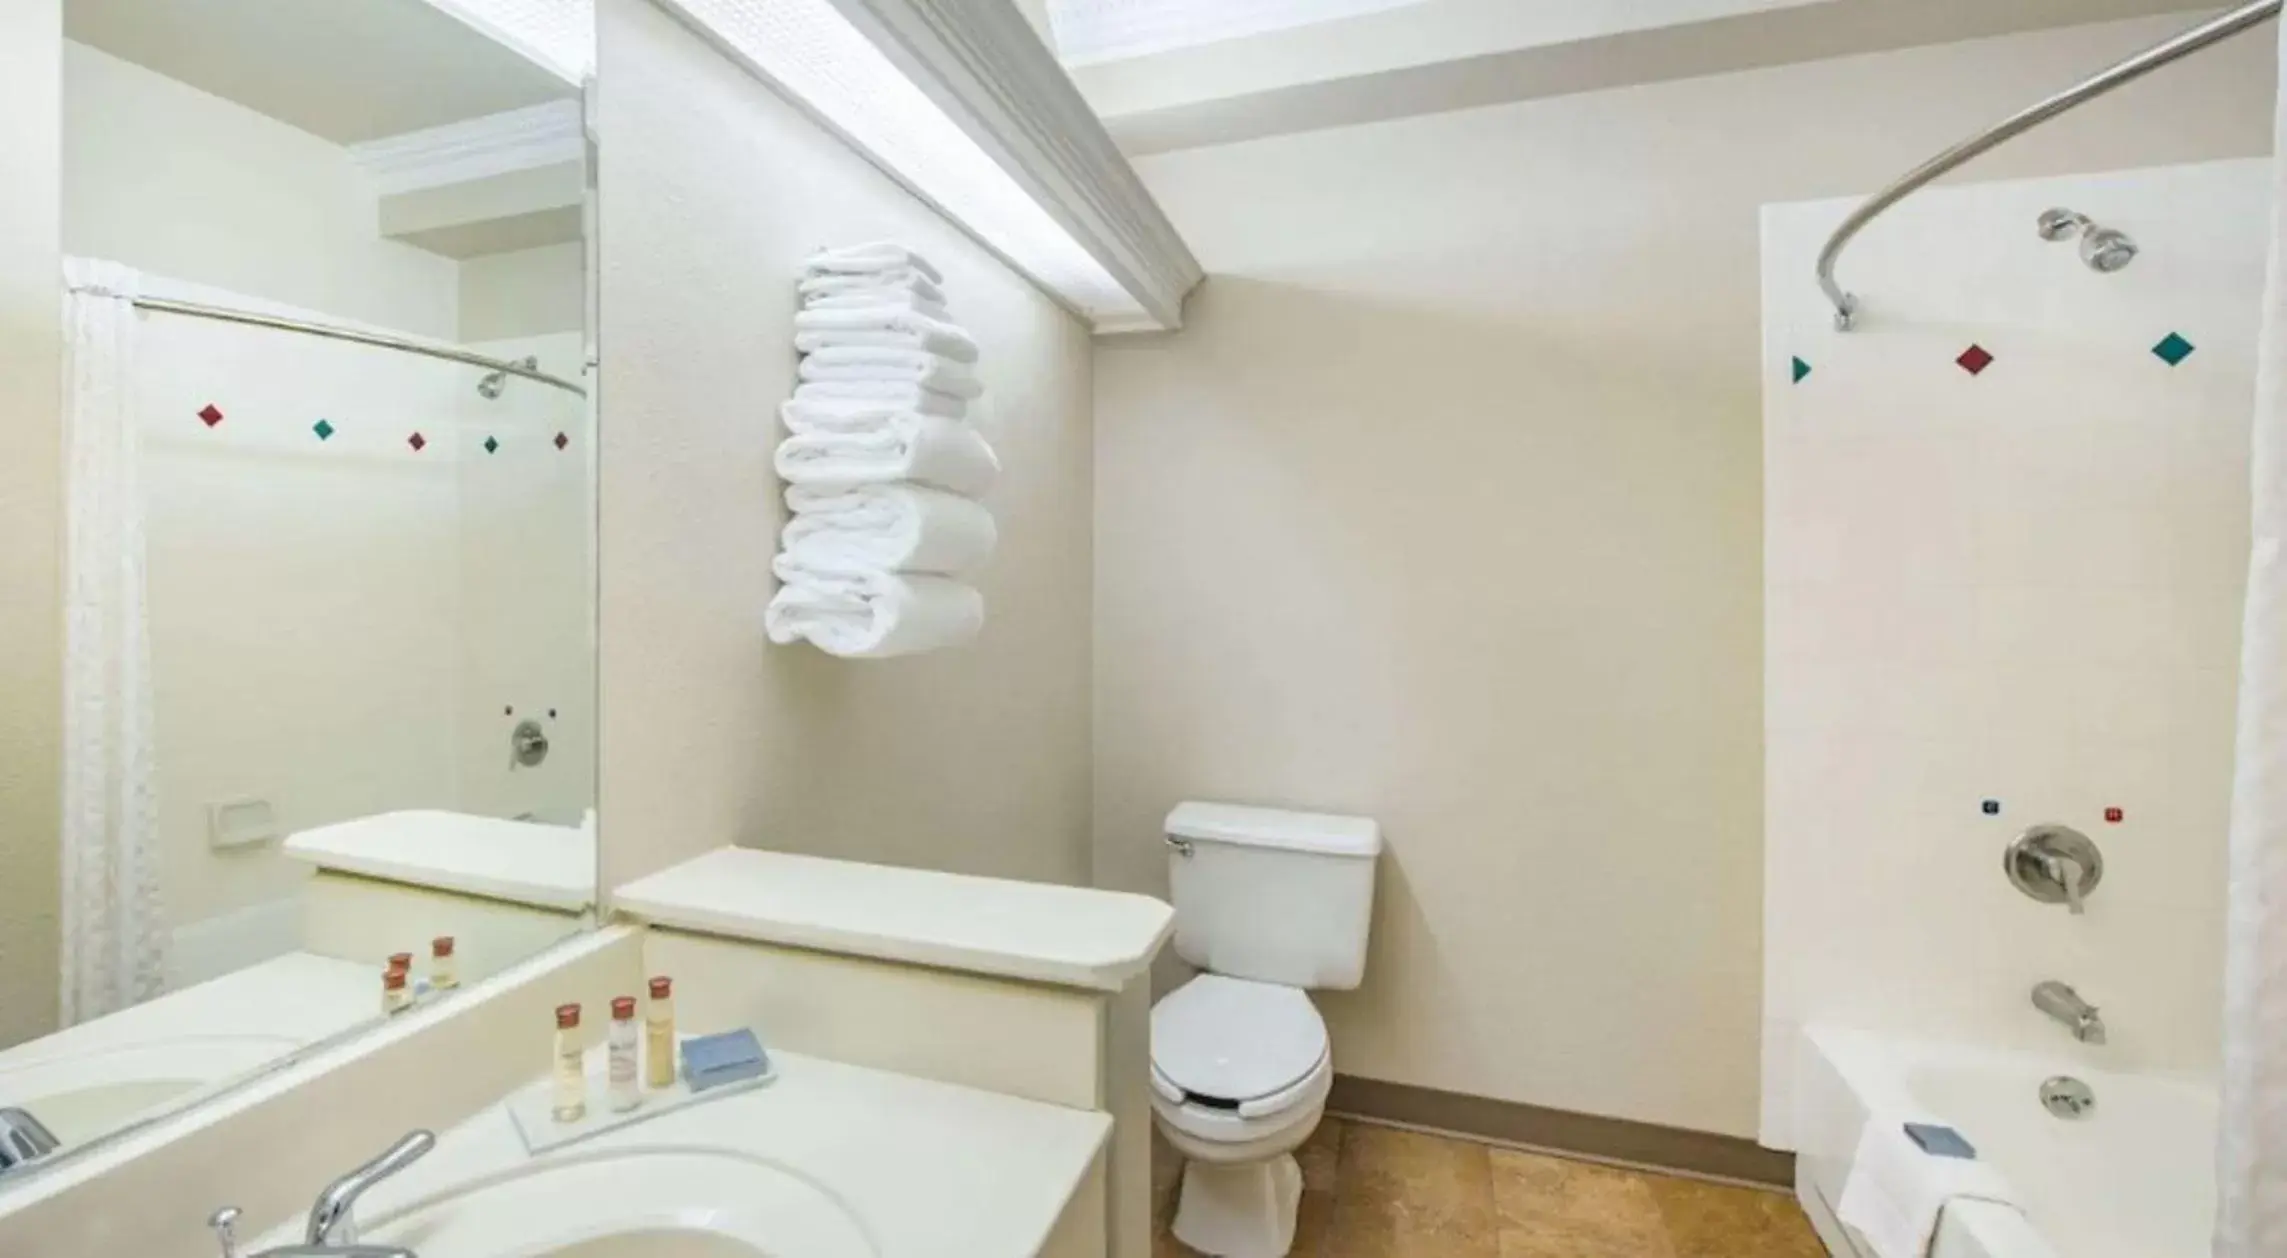 Bathroom in Rodeway Inn & Suites